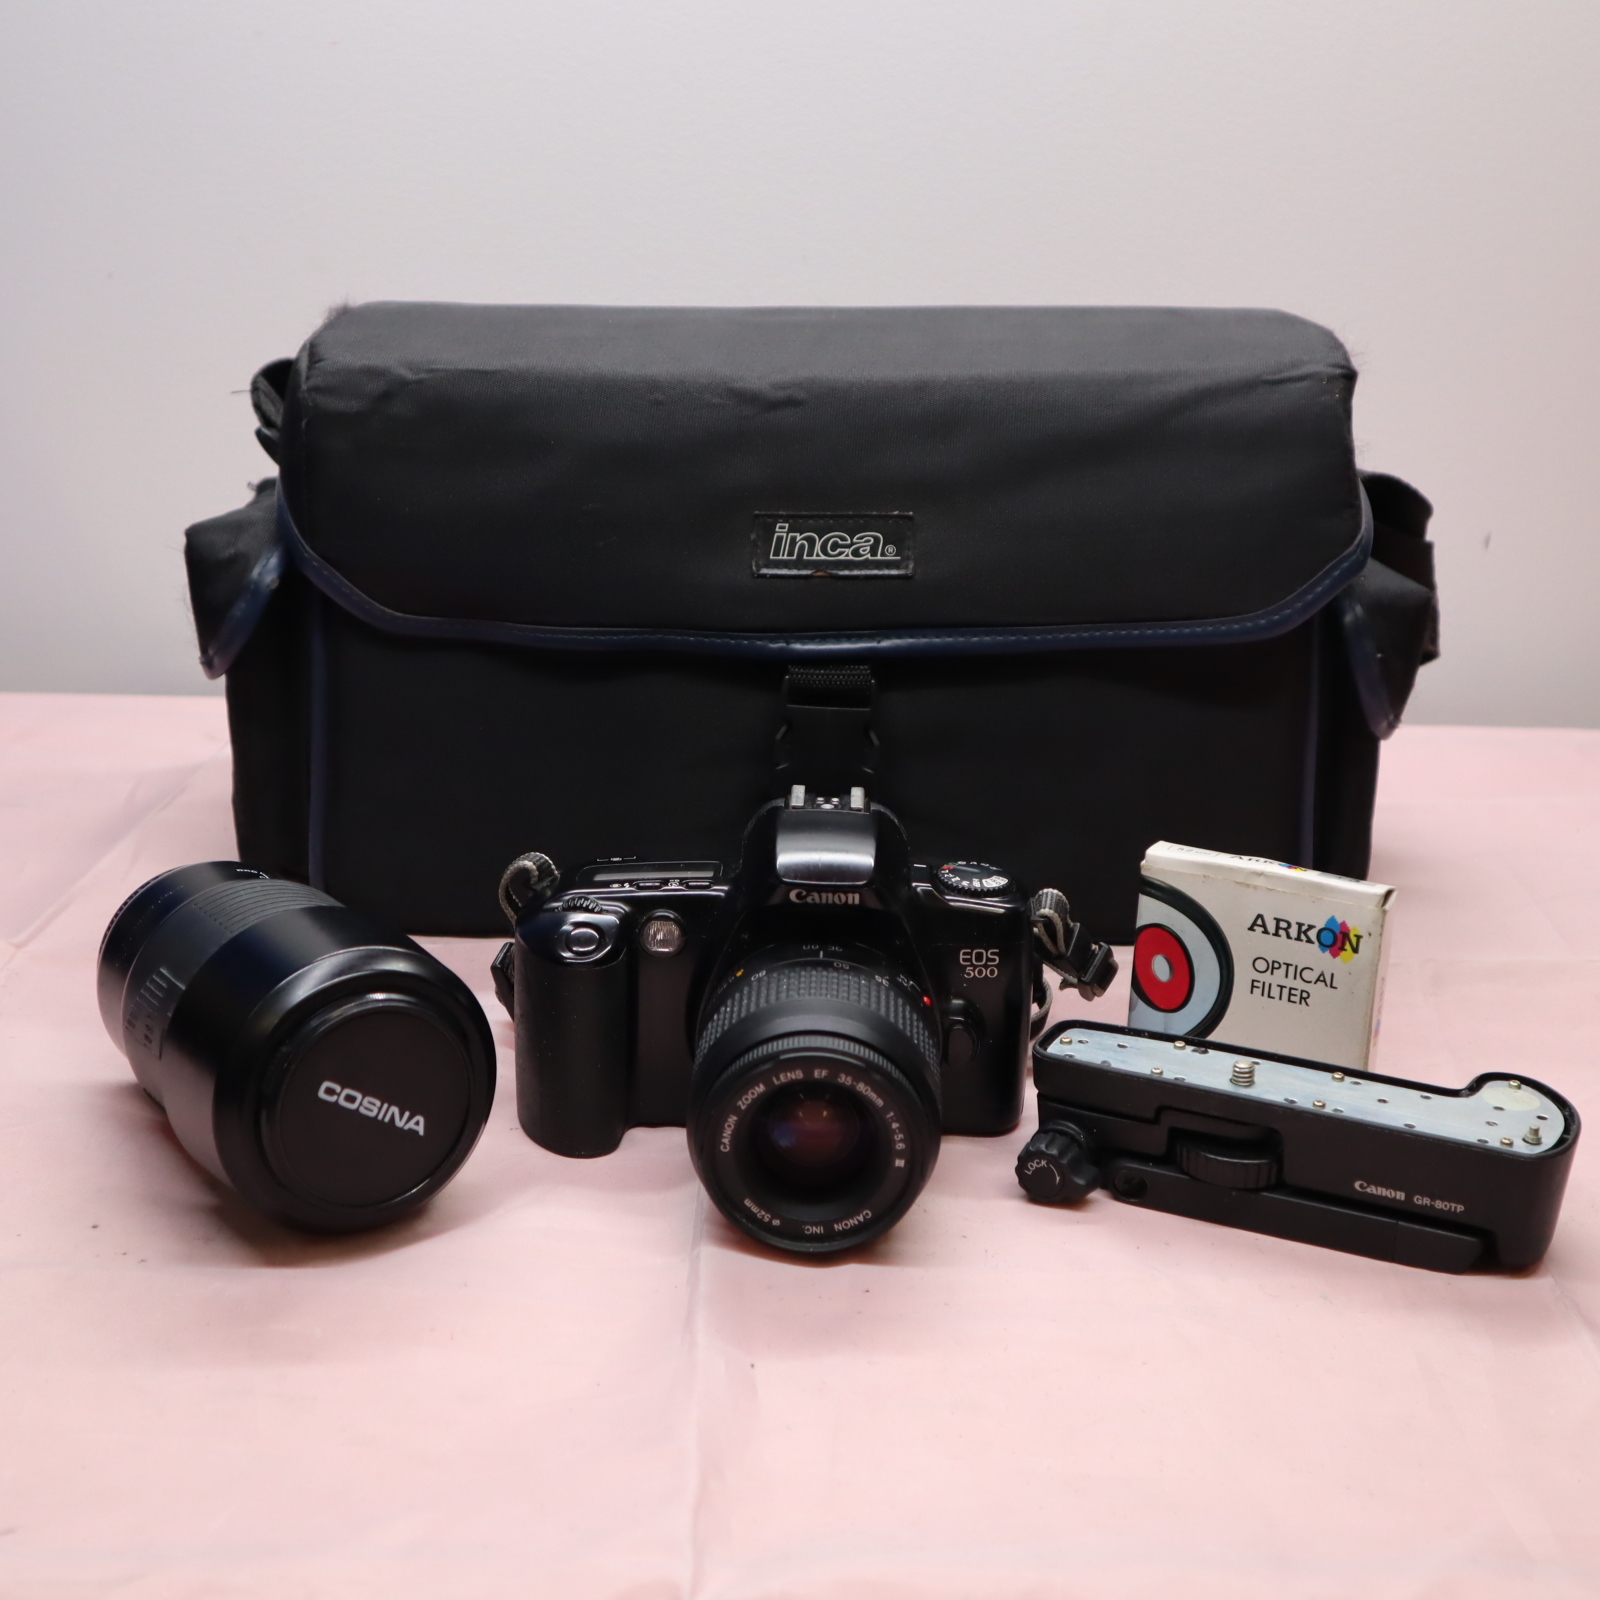 Canon EOS 500 35mm Film SLR Camera w/Accessories - UNTESTED Image 1